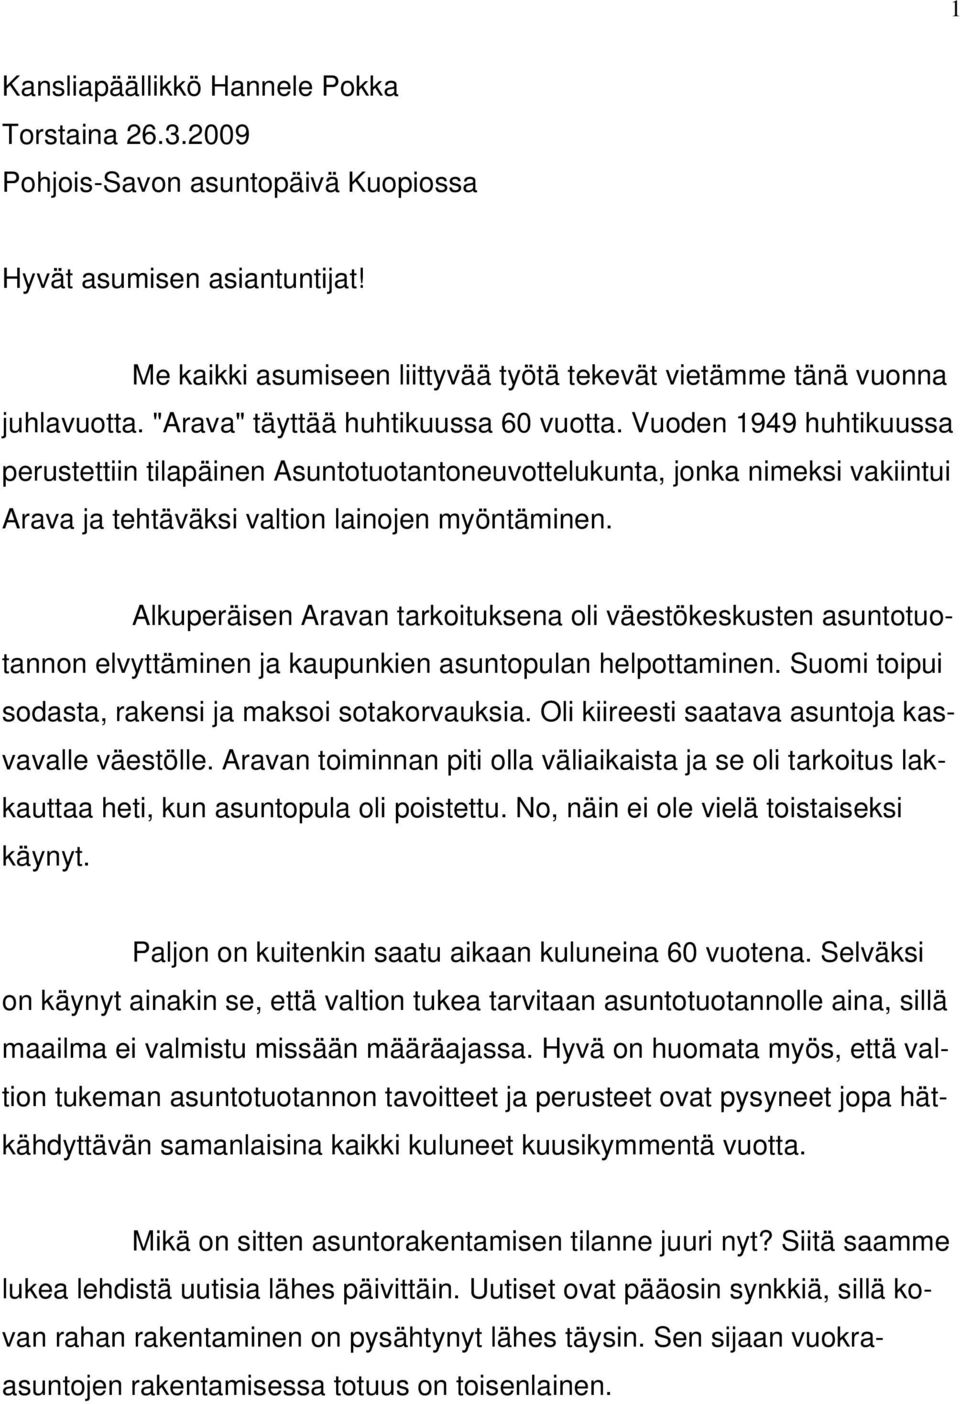 Alkuperäisen Aravan tarkoituksena oli väestökeskusten asuntotuotannon elvyttäminen ja kaupunkien asuntopulan helpottaminen. Suomi toipui sodasta, rakensi ja maksoi sotakorvauksia.